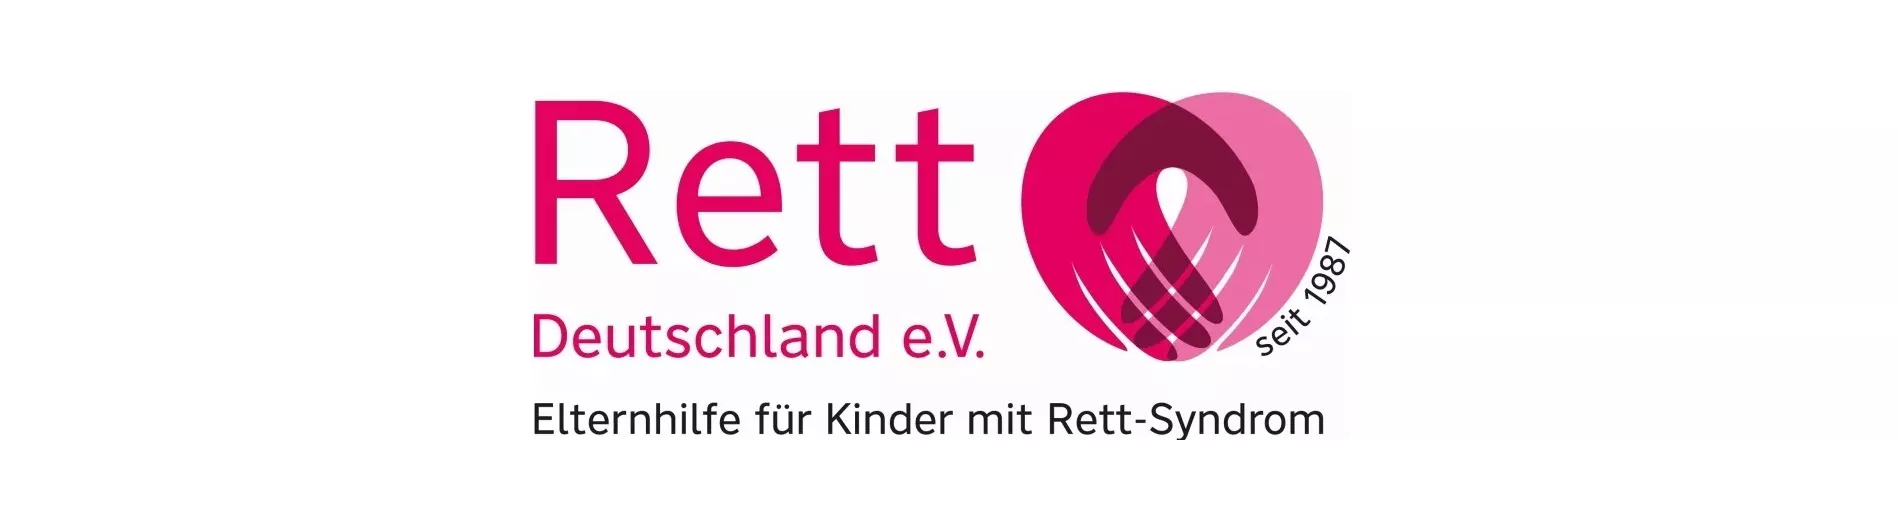 Die Elternhilfe für Kinder mit Rett-Syndrom in Deutschland e.V.